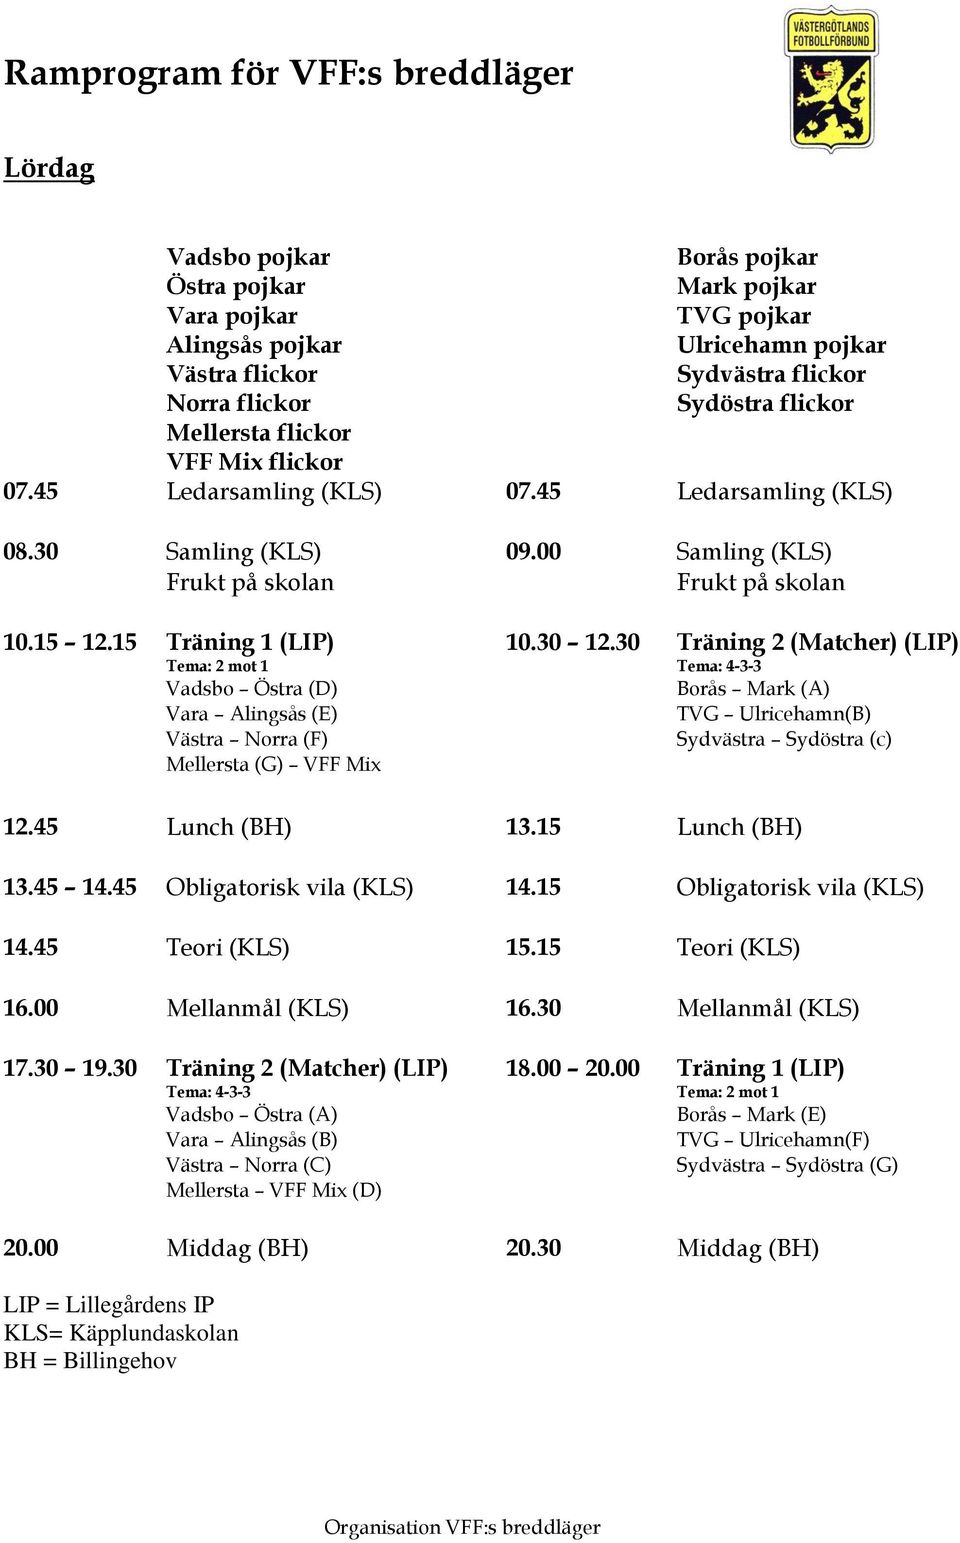 15 Träning 1 (LIP) Vadsbo Östra (D) Vara Alingsås (E) Västra Norra (F) Mellersta (G) VFF Mix 10.30 12.